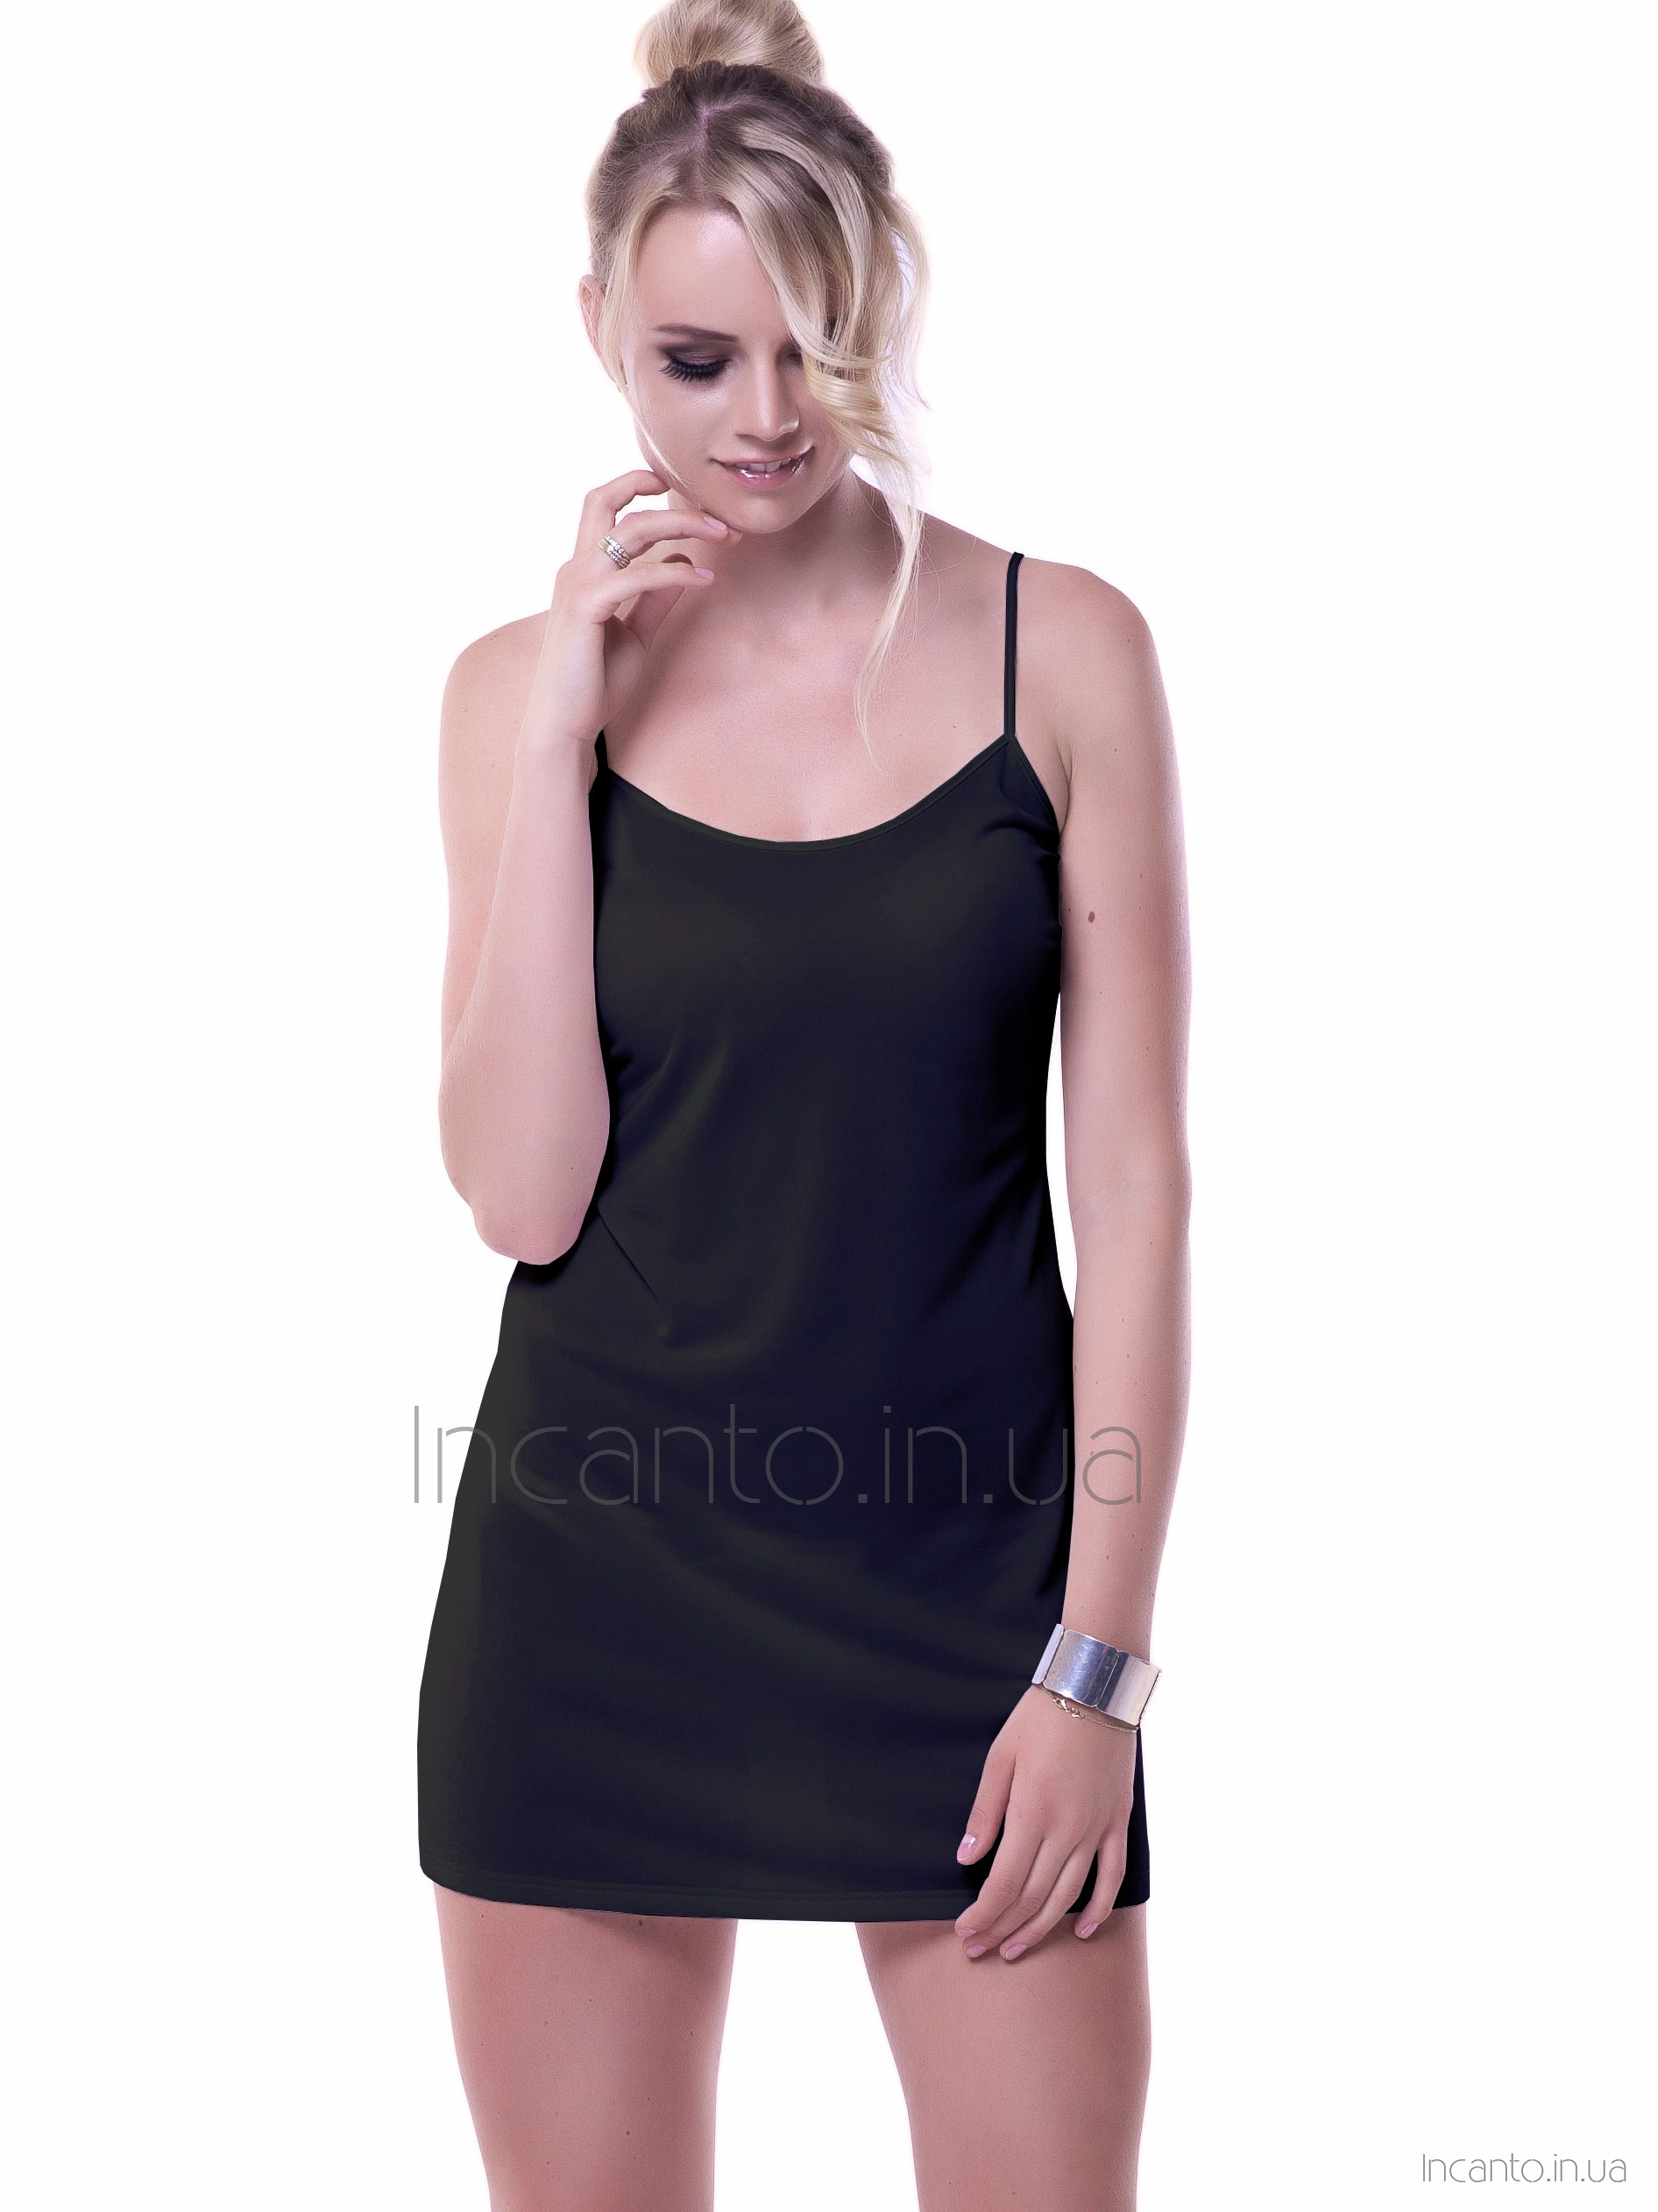 Women's short shirt/slip in soft viscose Mewa 86118 Ofelia maxi #5